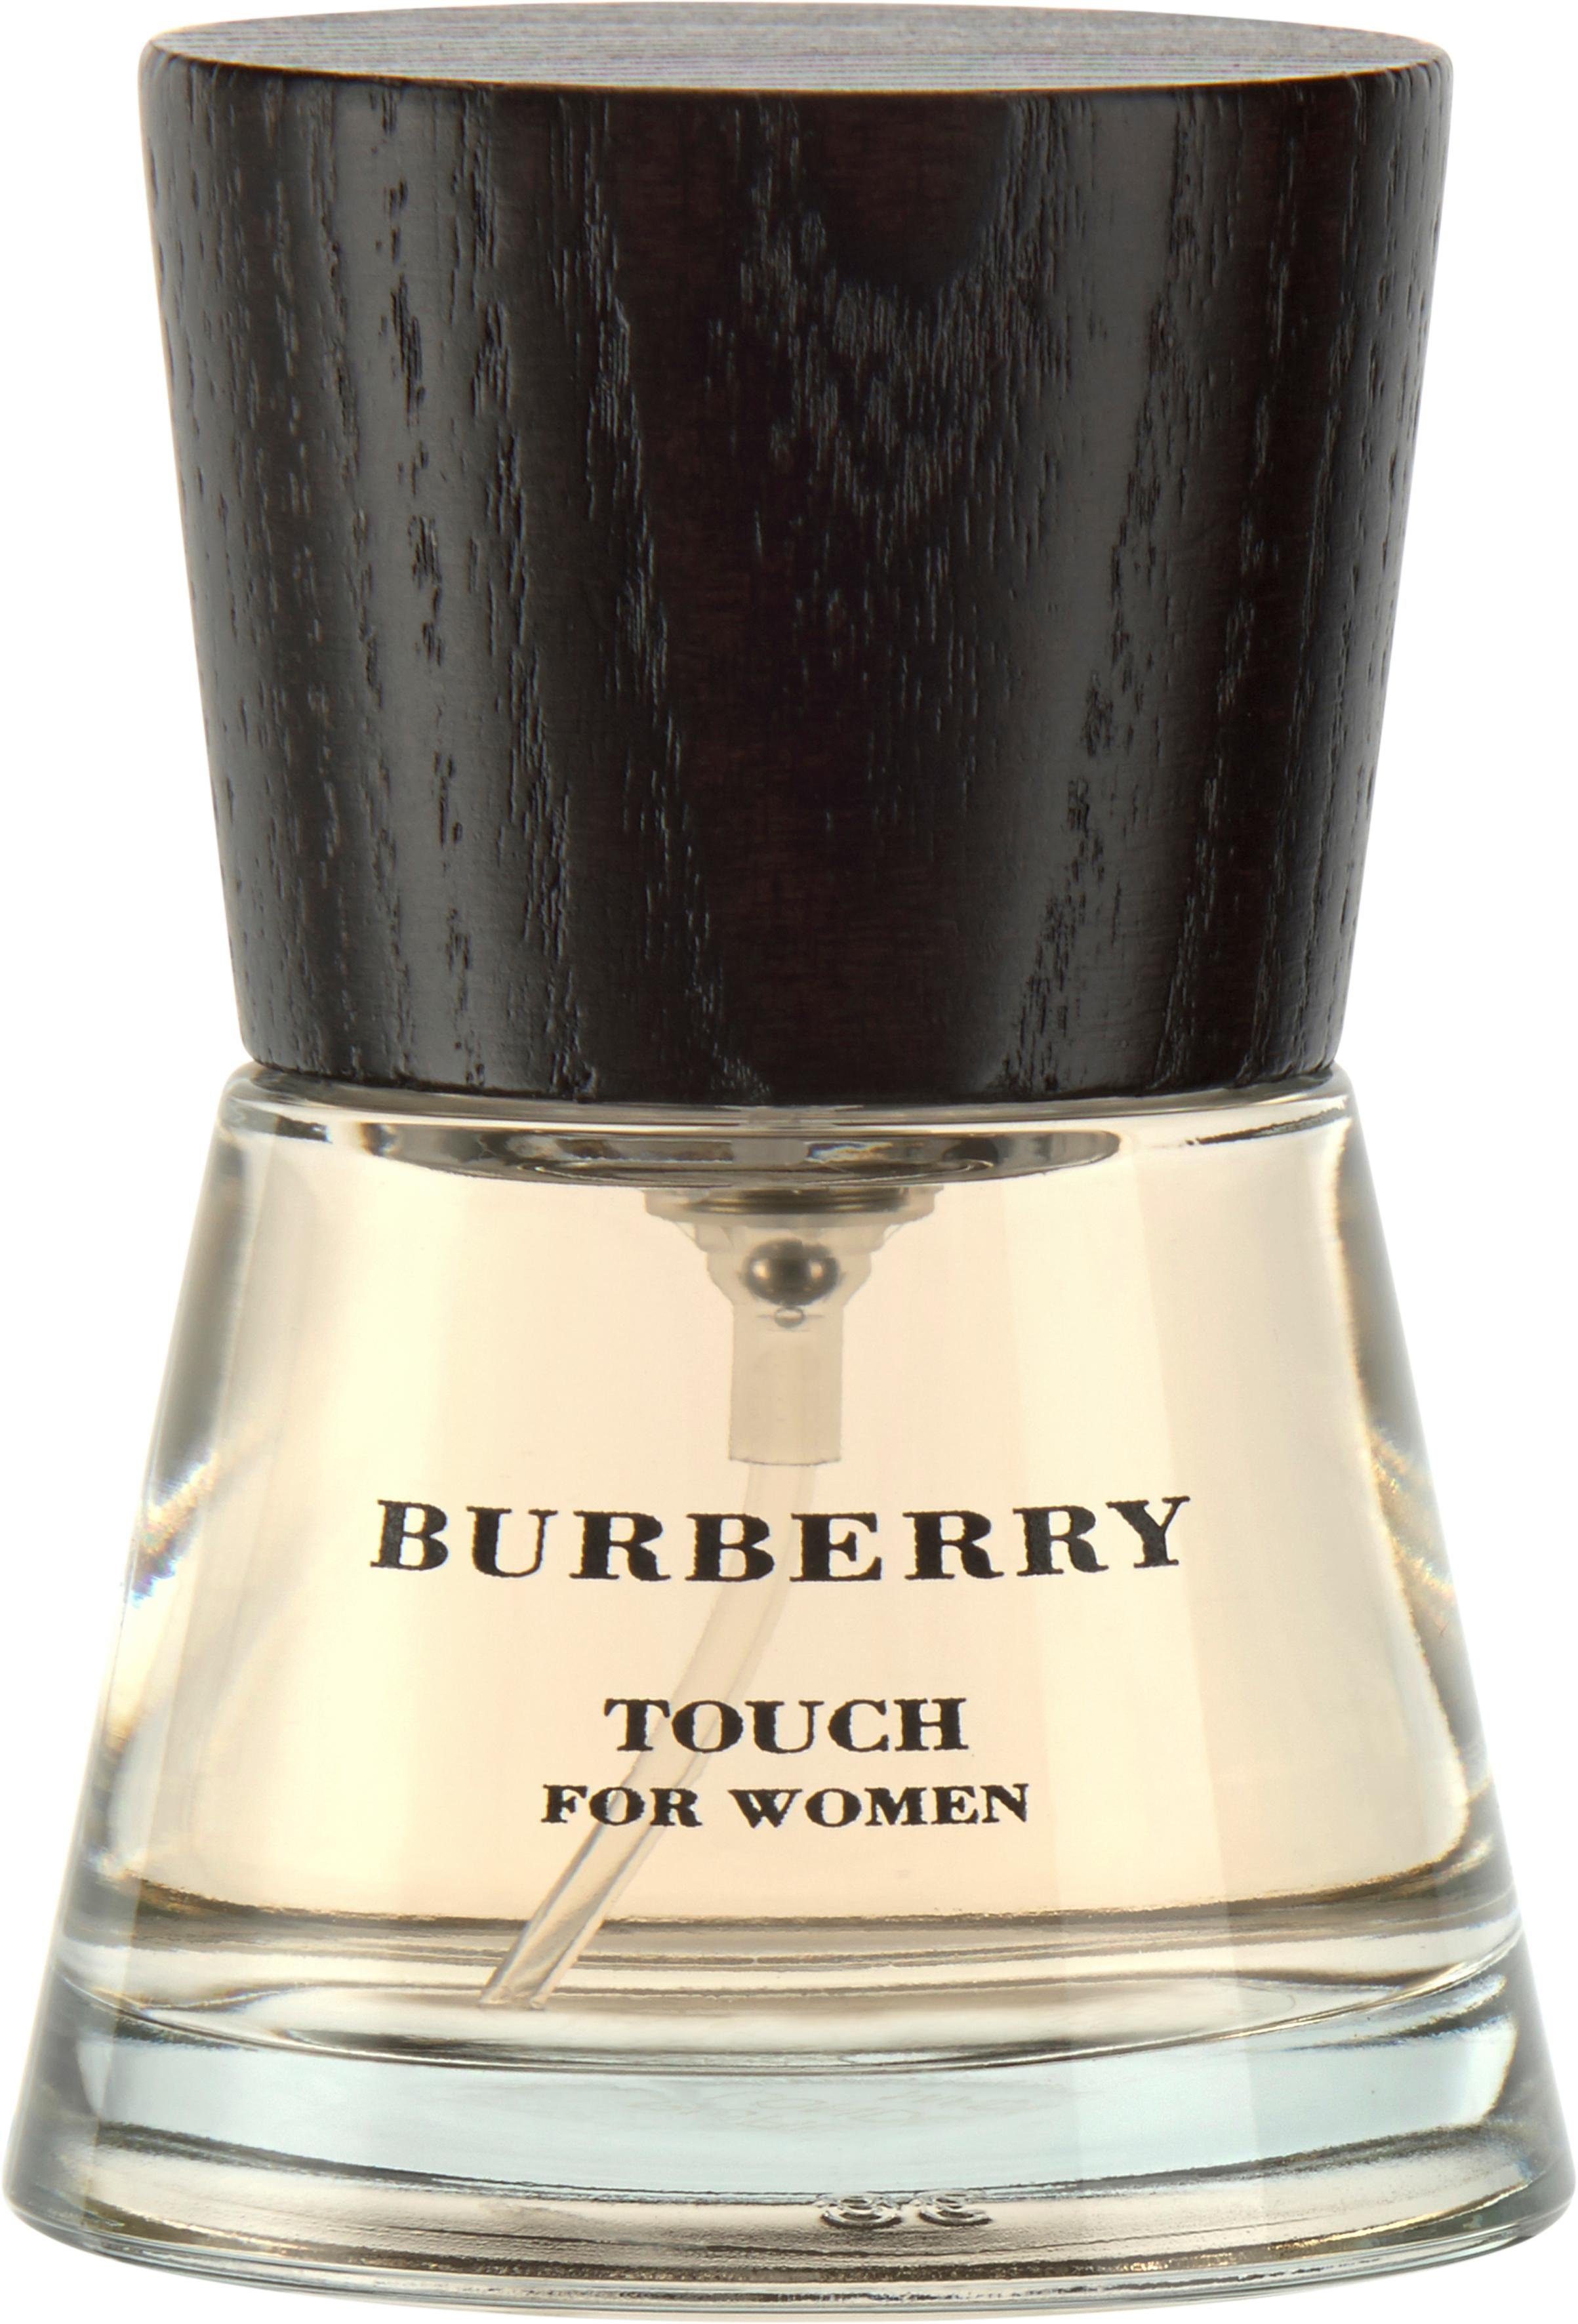 Burberry Damen Parfums online kaufen | OTTO